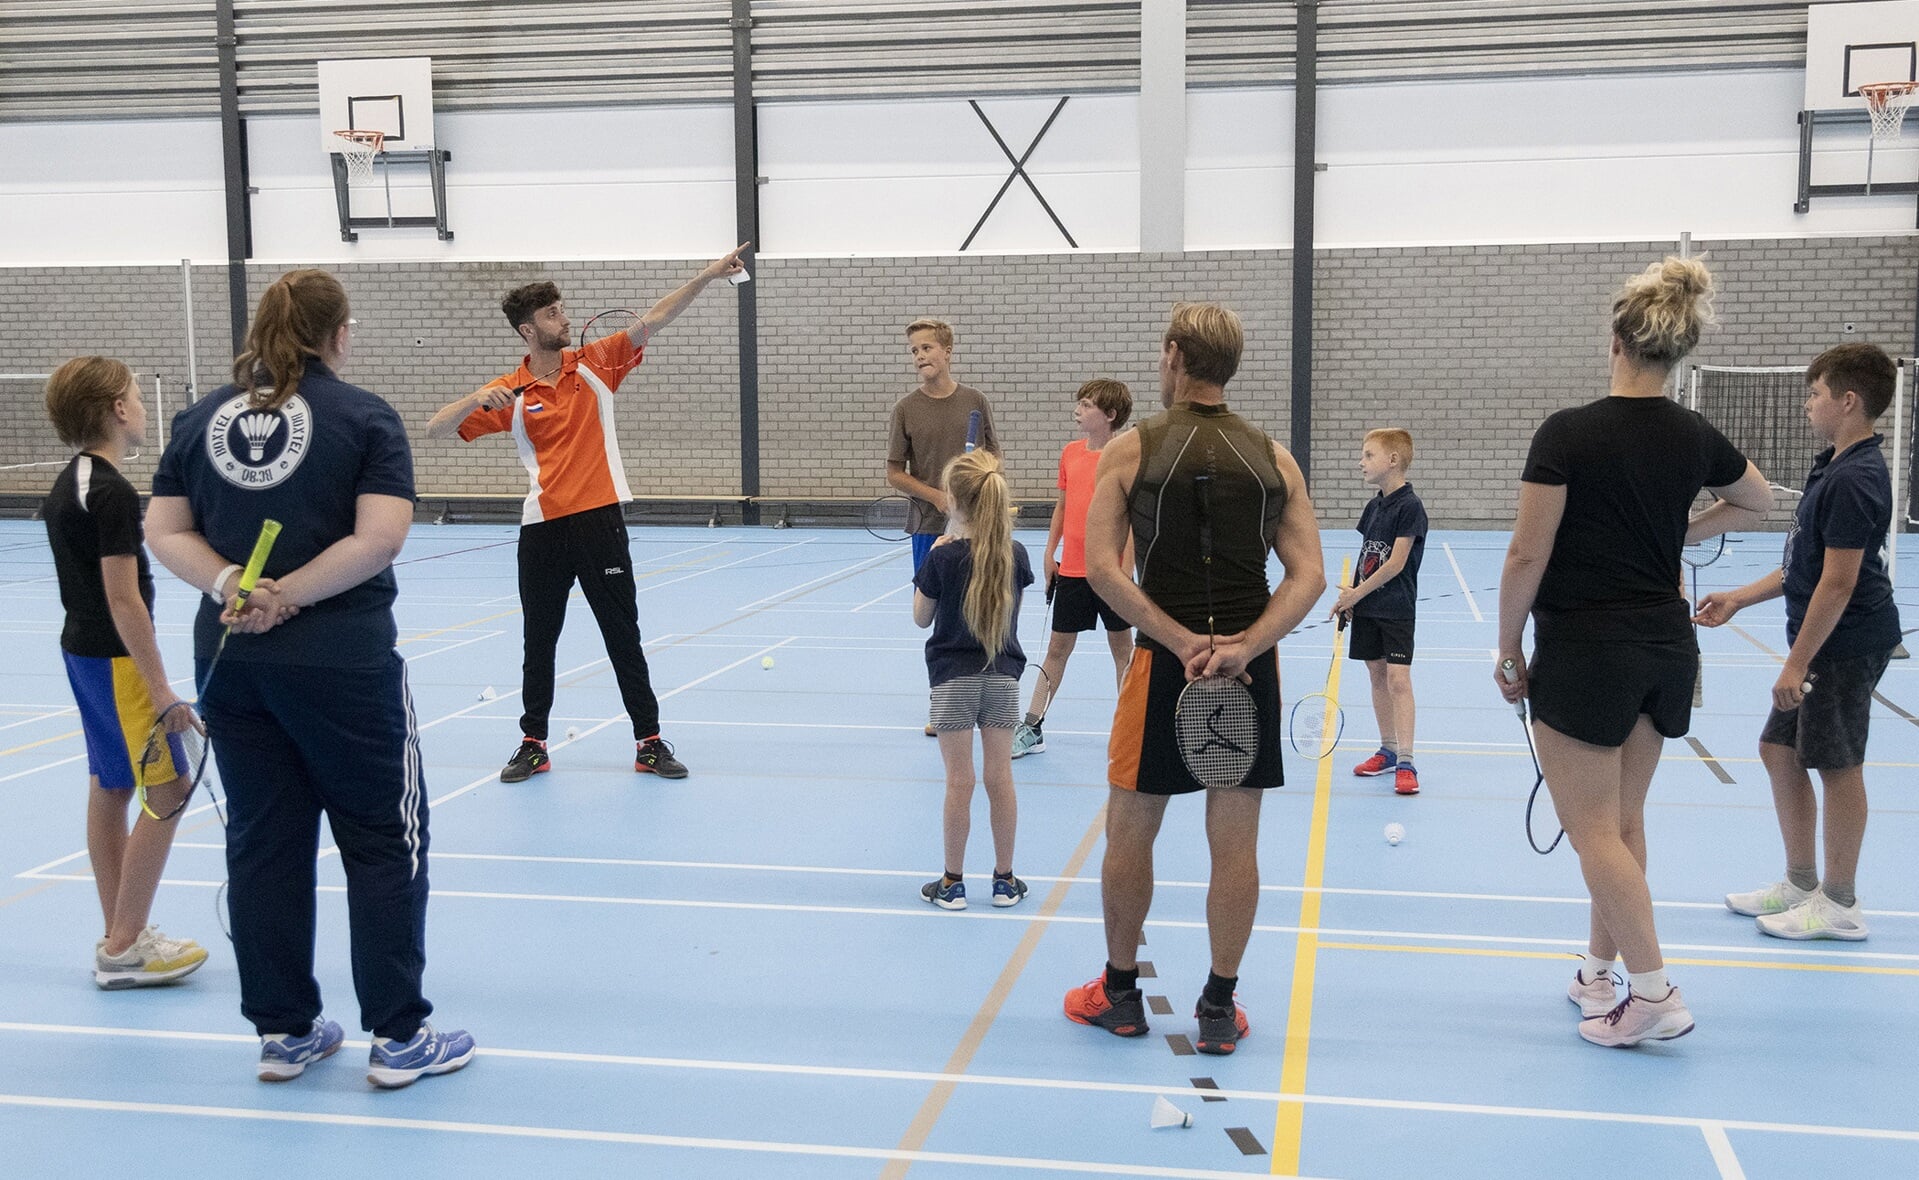 Het lijkt of Jacco Arends Usain Bolt nadoet, maar dat is niet zo. Hij geeft uitleg over badmintontechniek. Jeugdtrainers en kinderen luisteren naar zijn instructie.